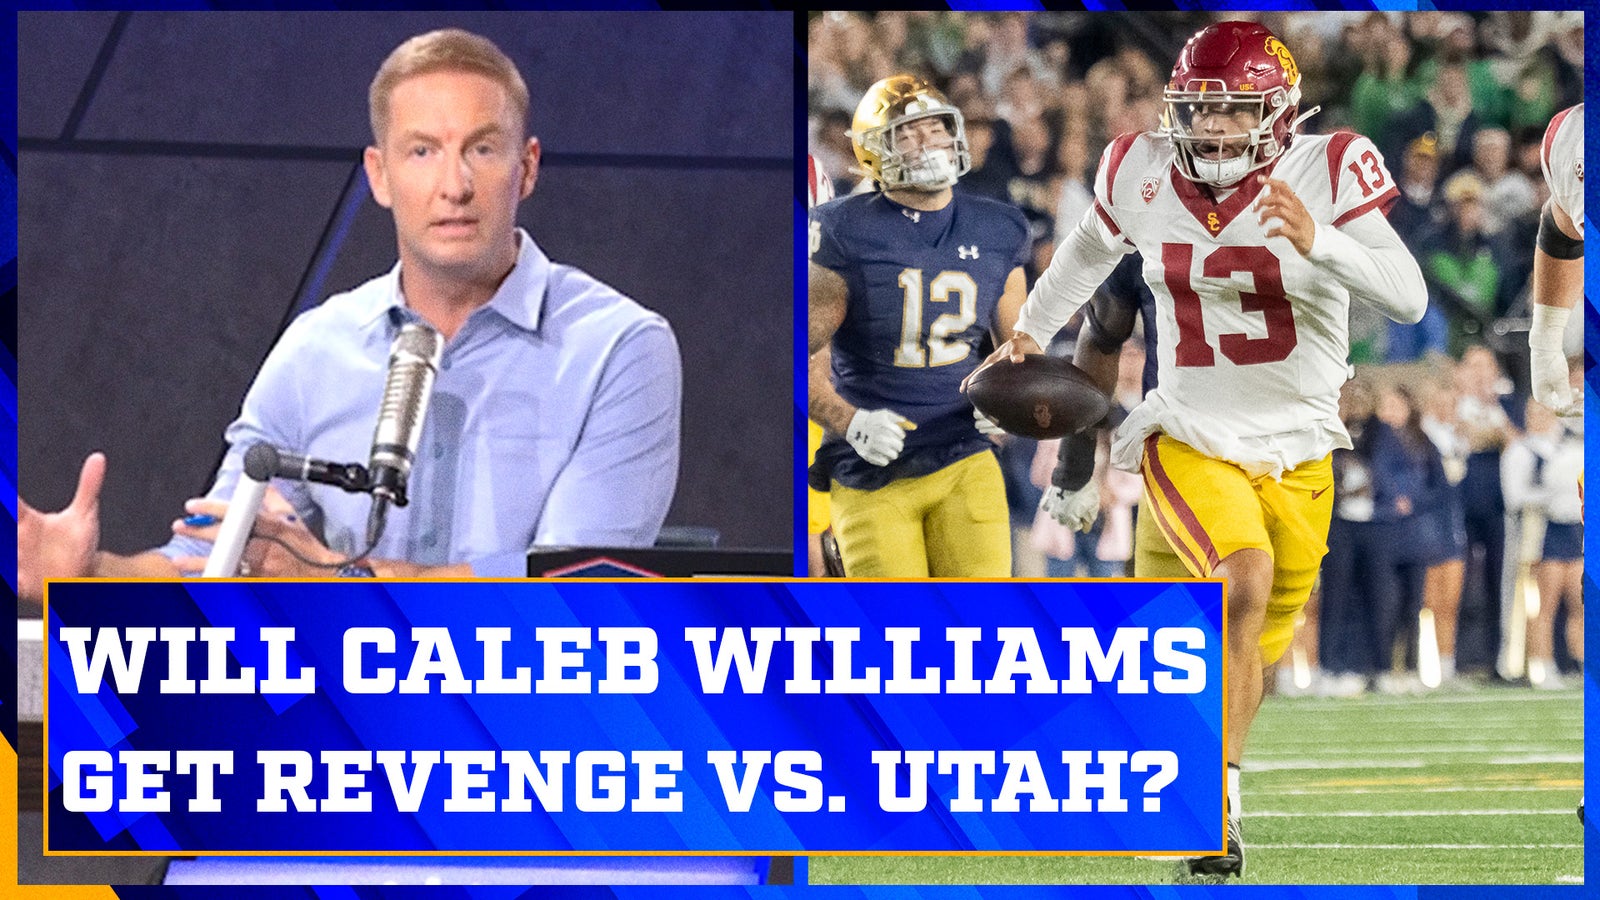 Will USC get revenge against Utah?